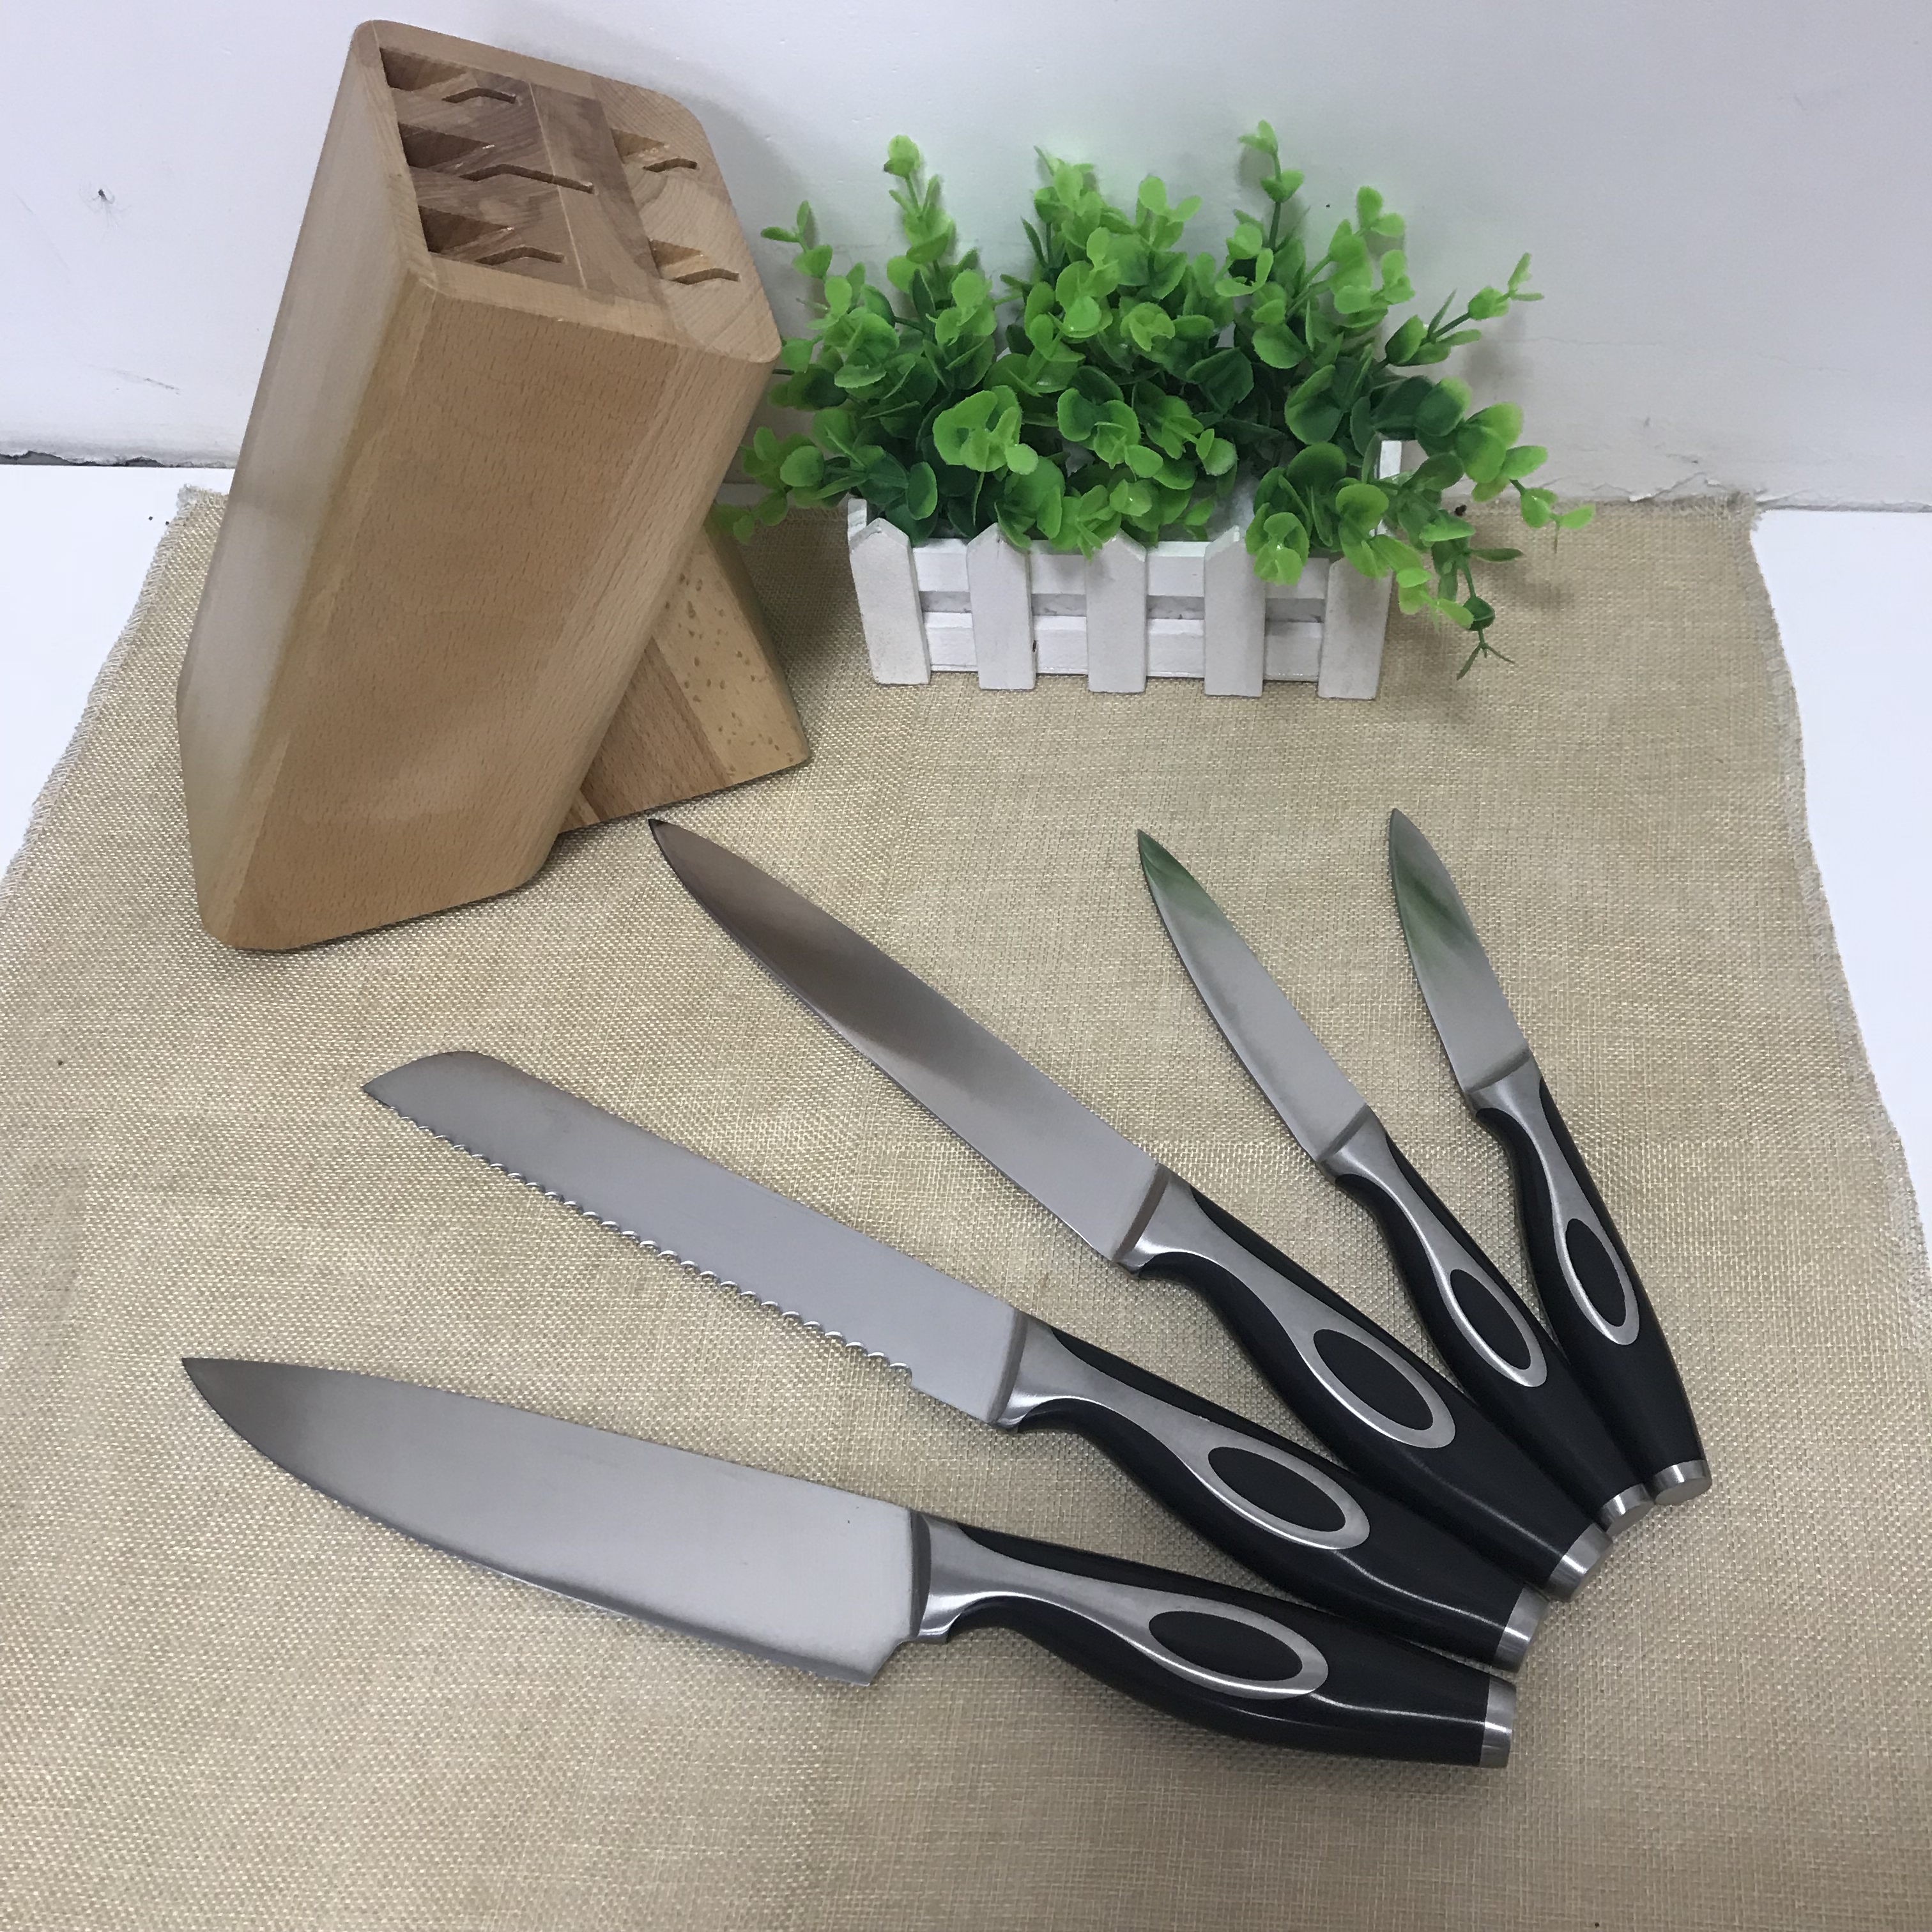 Knives set ORKN002